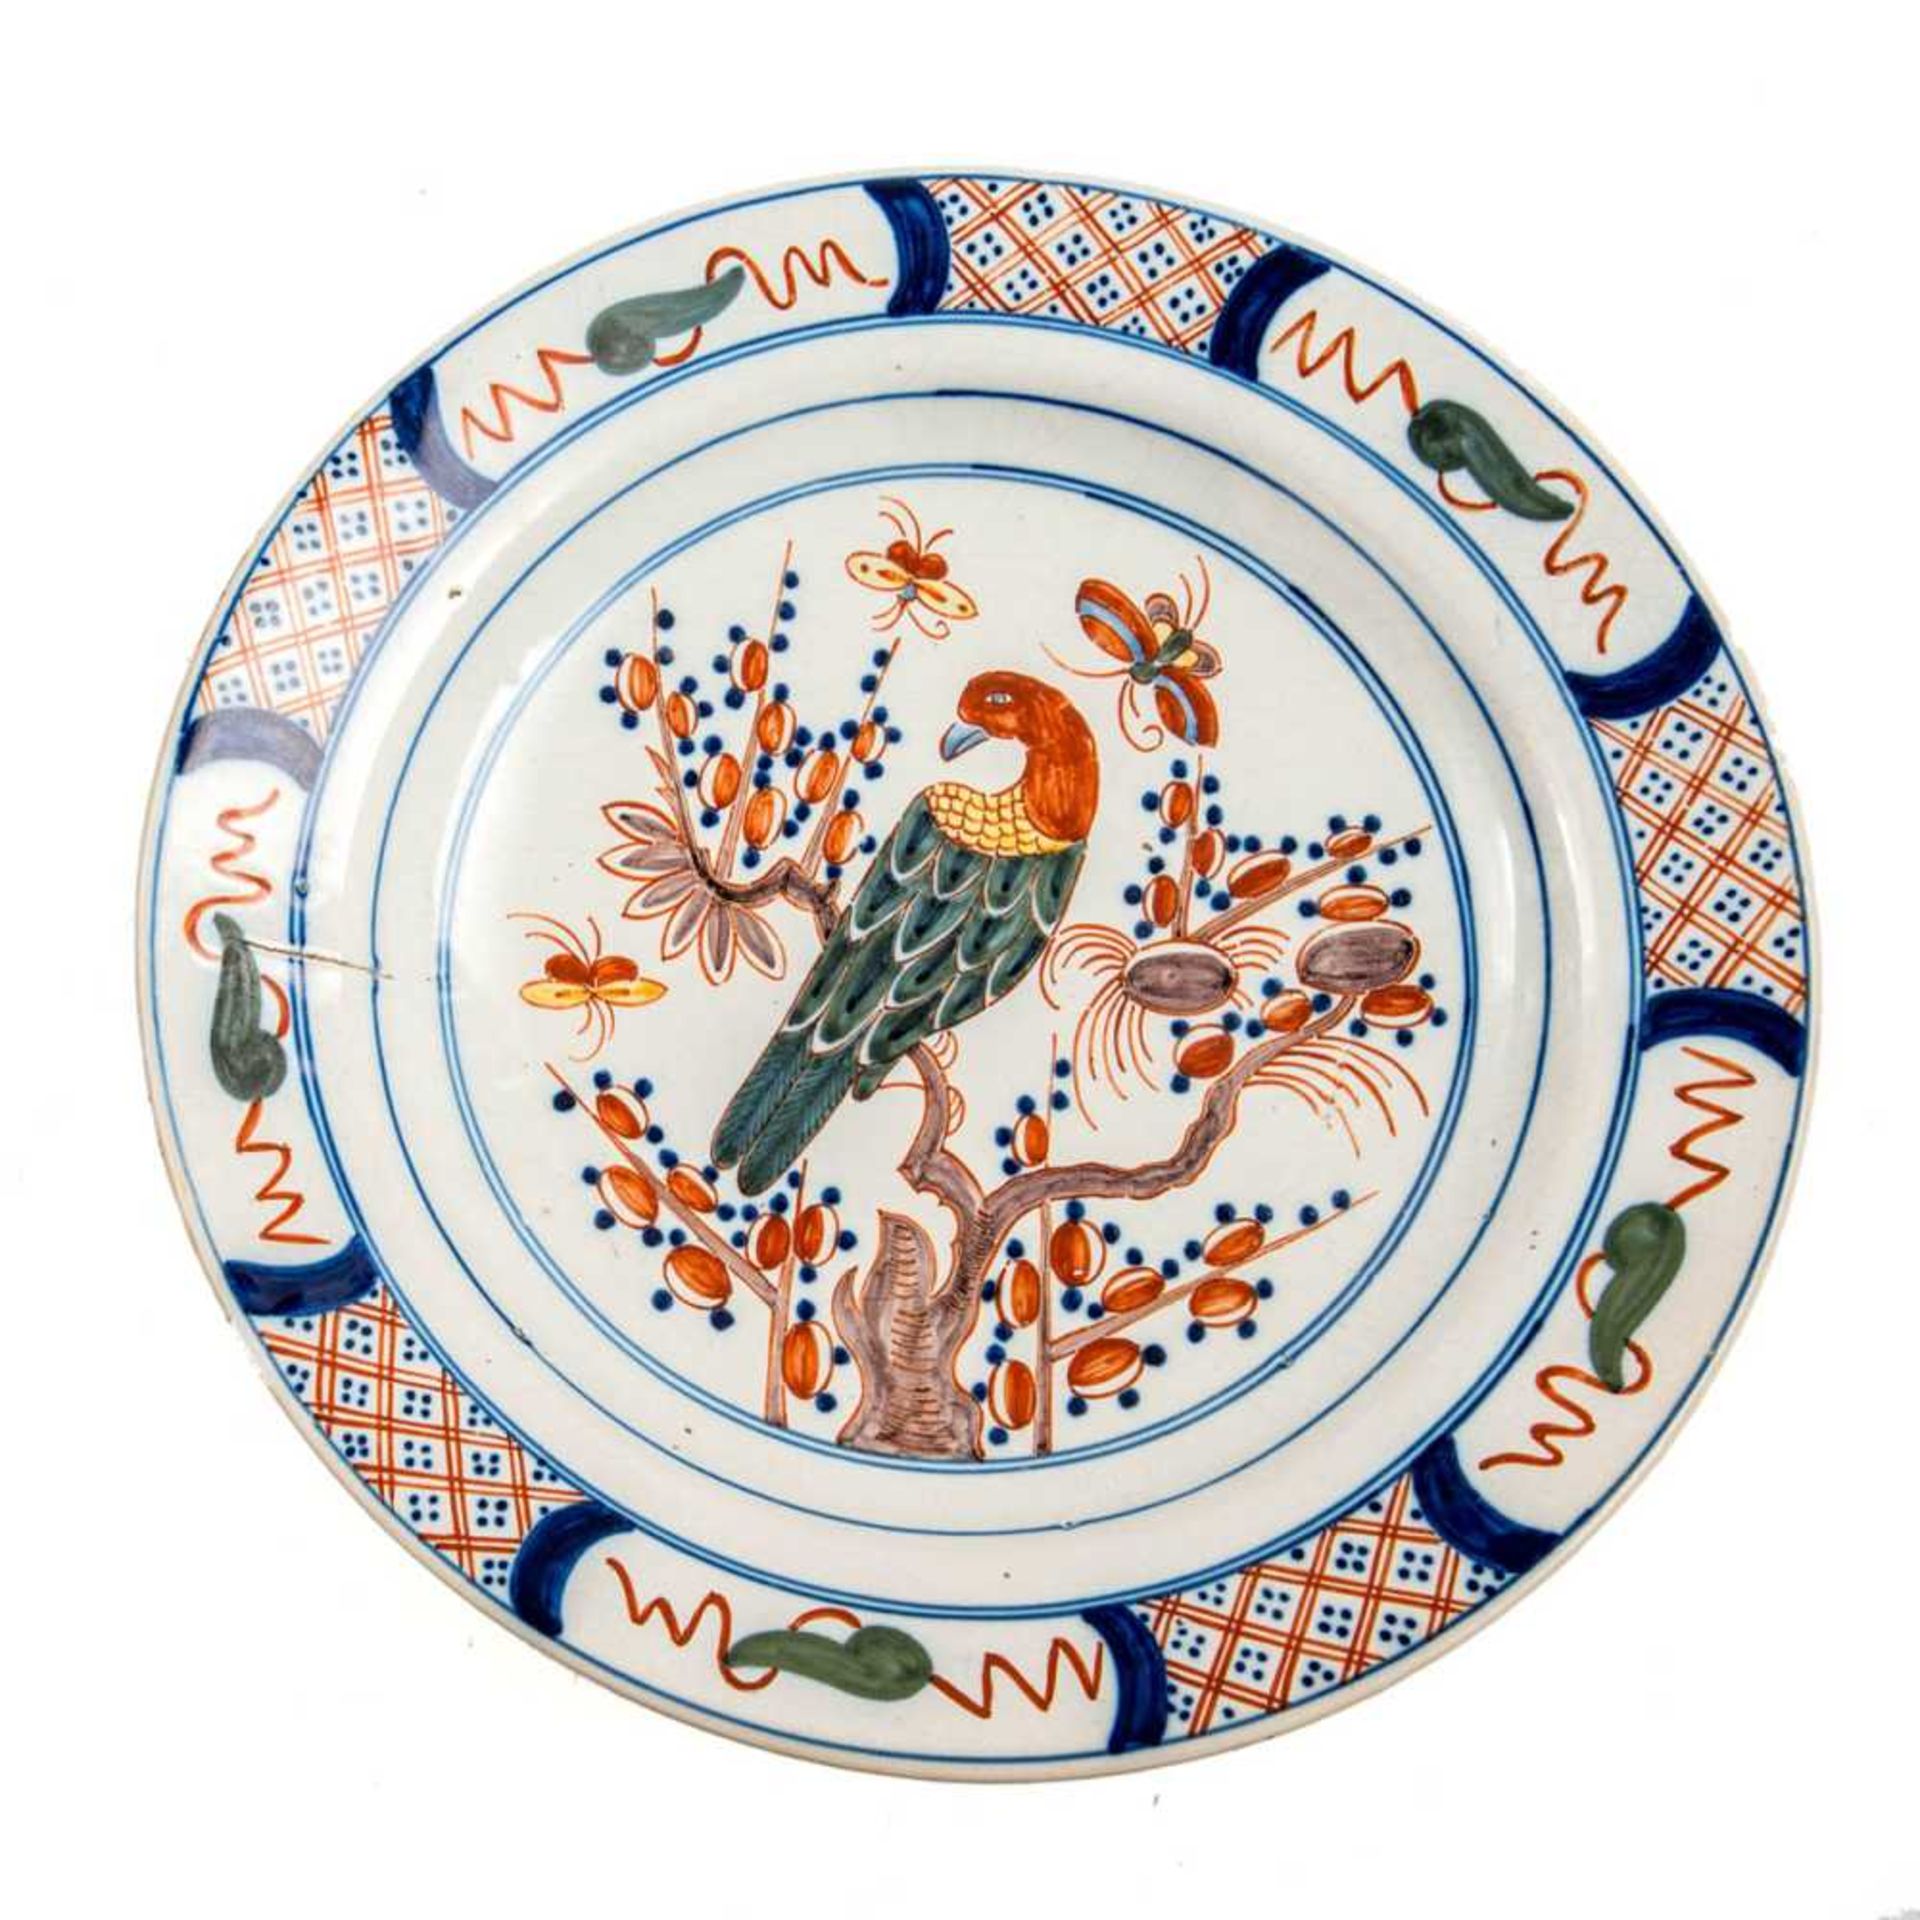 Zierteller, wohl Holland um 1900 Fayence nach chinesischem Vorbild mit Papagei auf Blütenzweig und